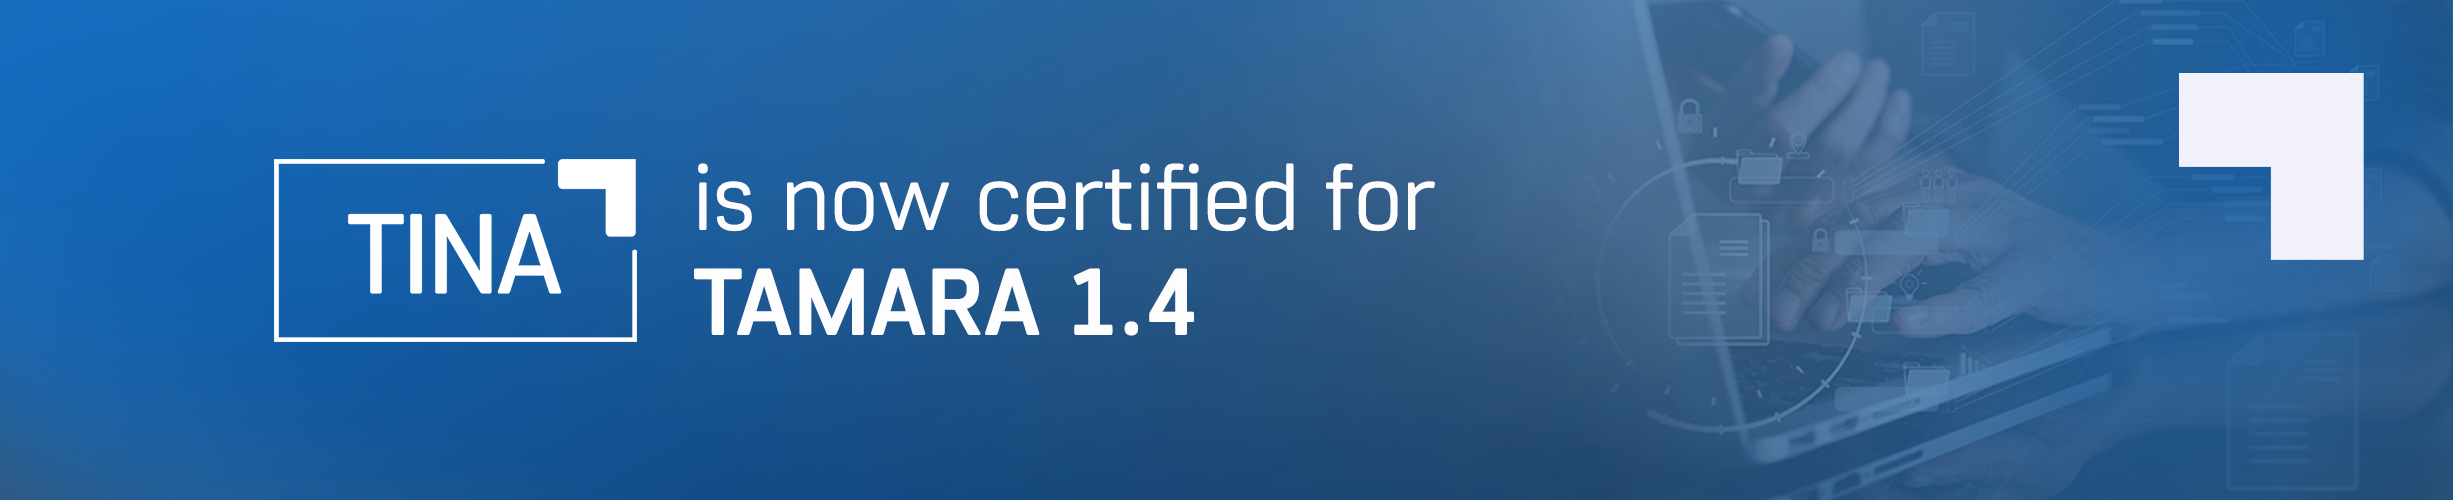 TINA - Tamara 1.4 certified